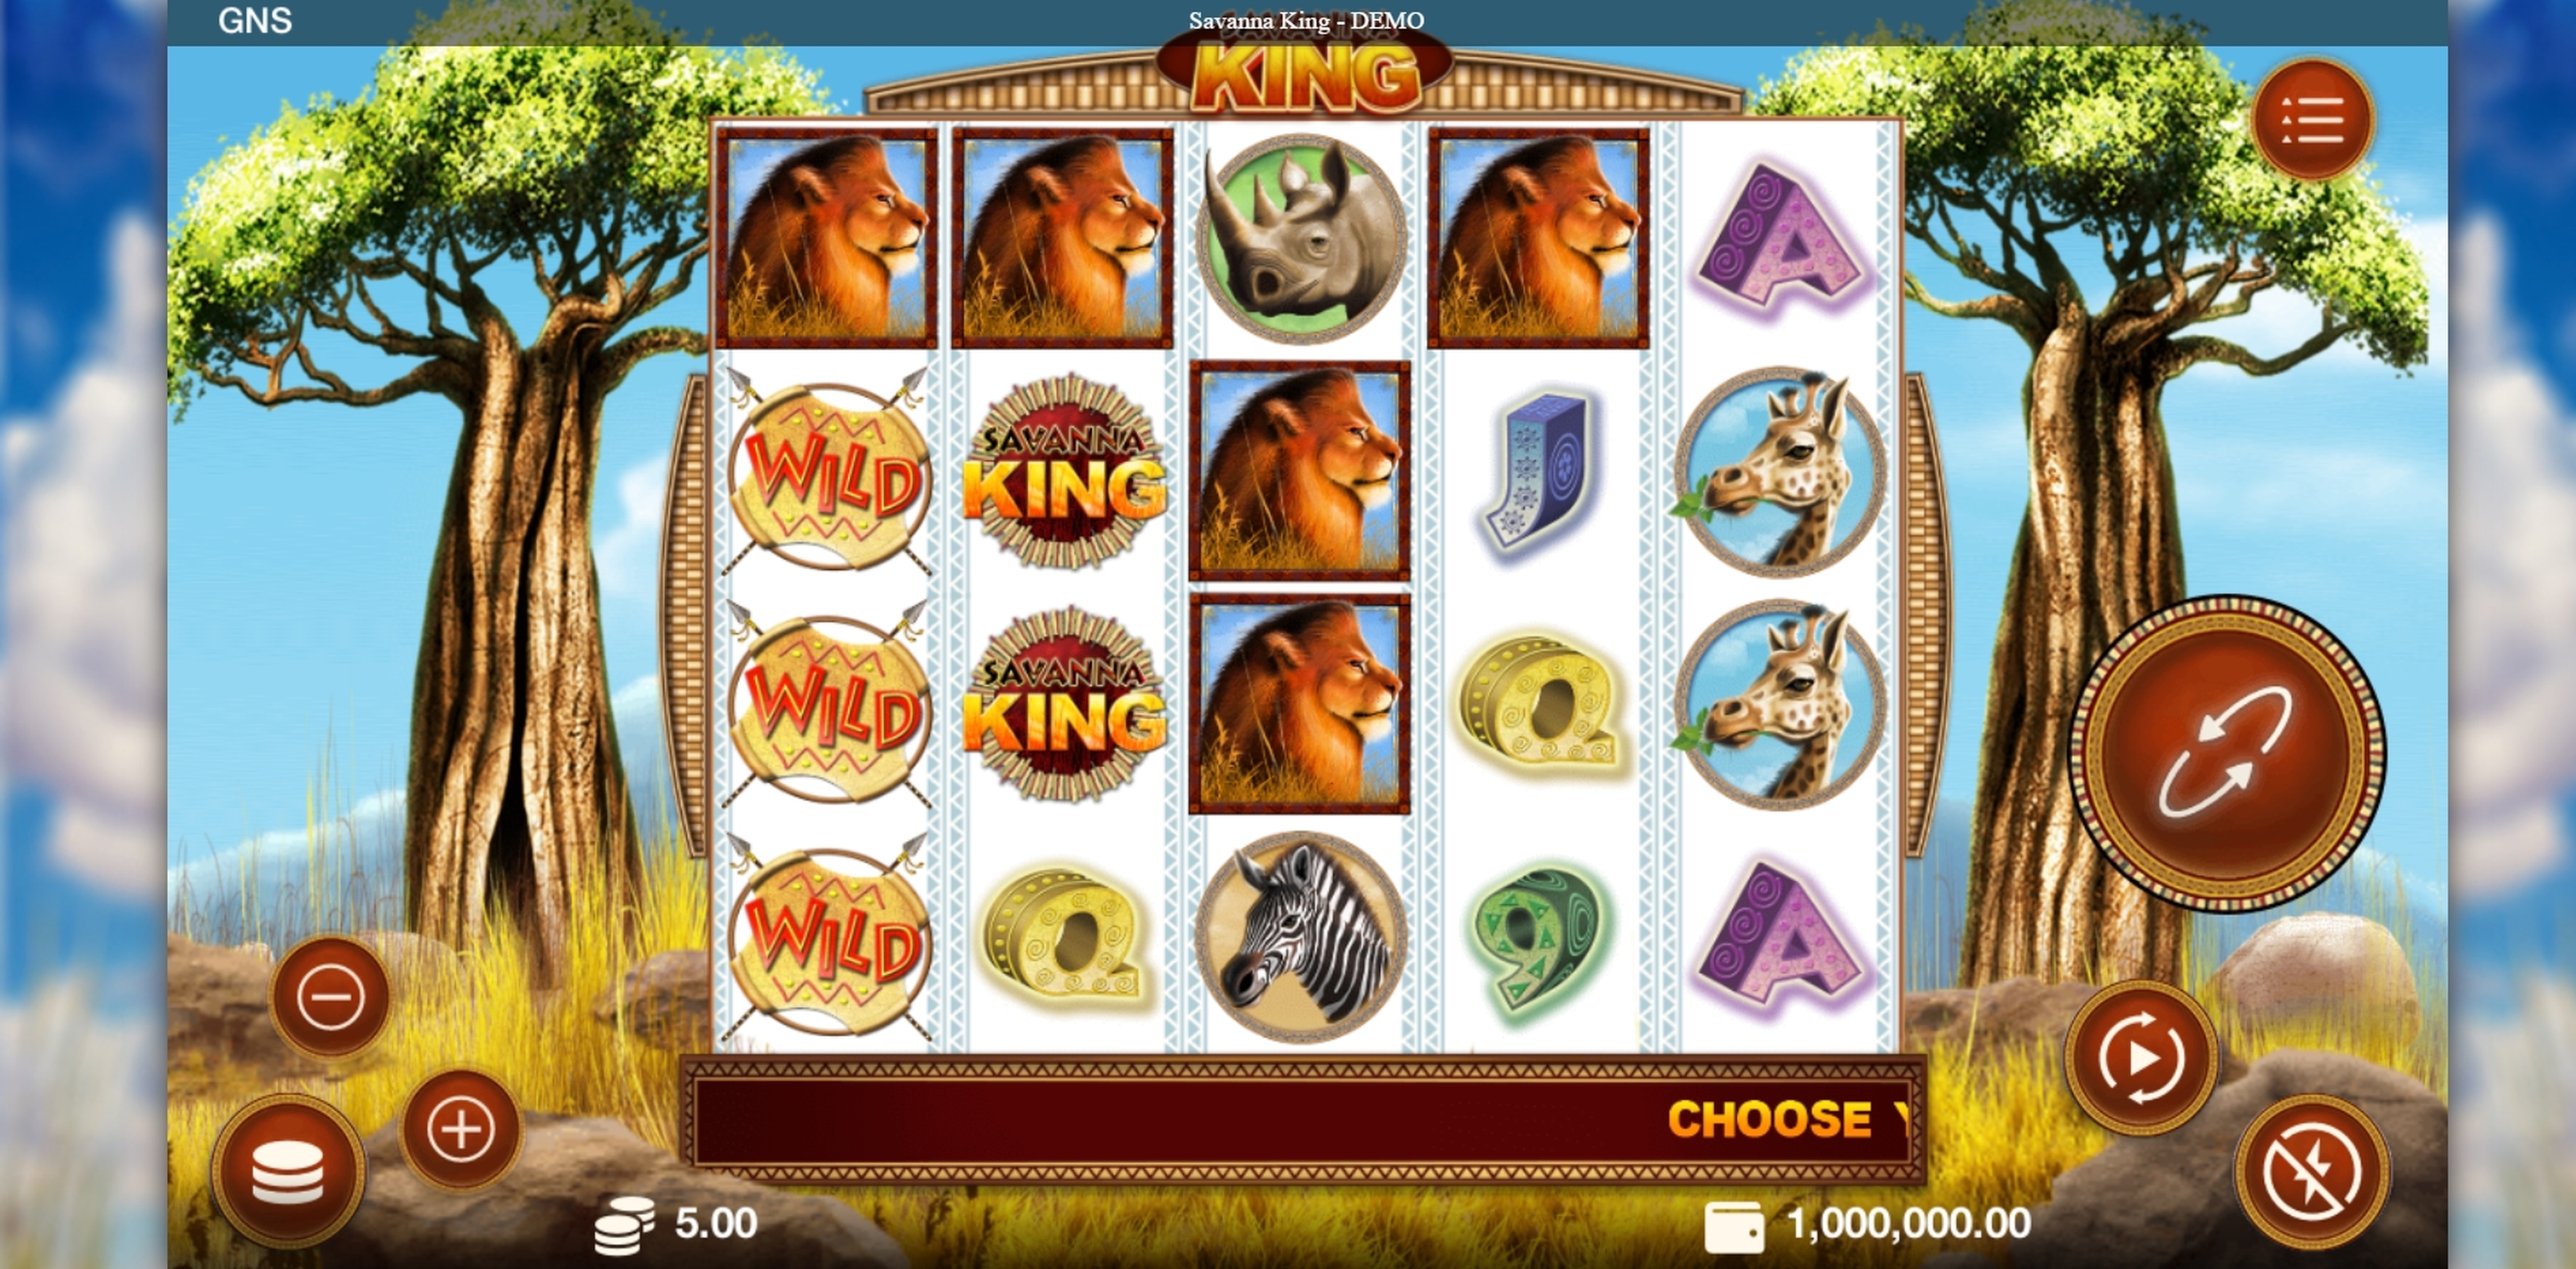 Reels in Savanna King Slot Game by Genesis Gaming